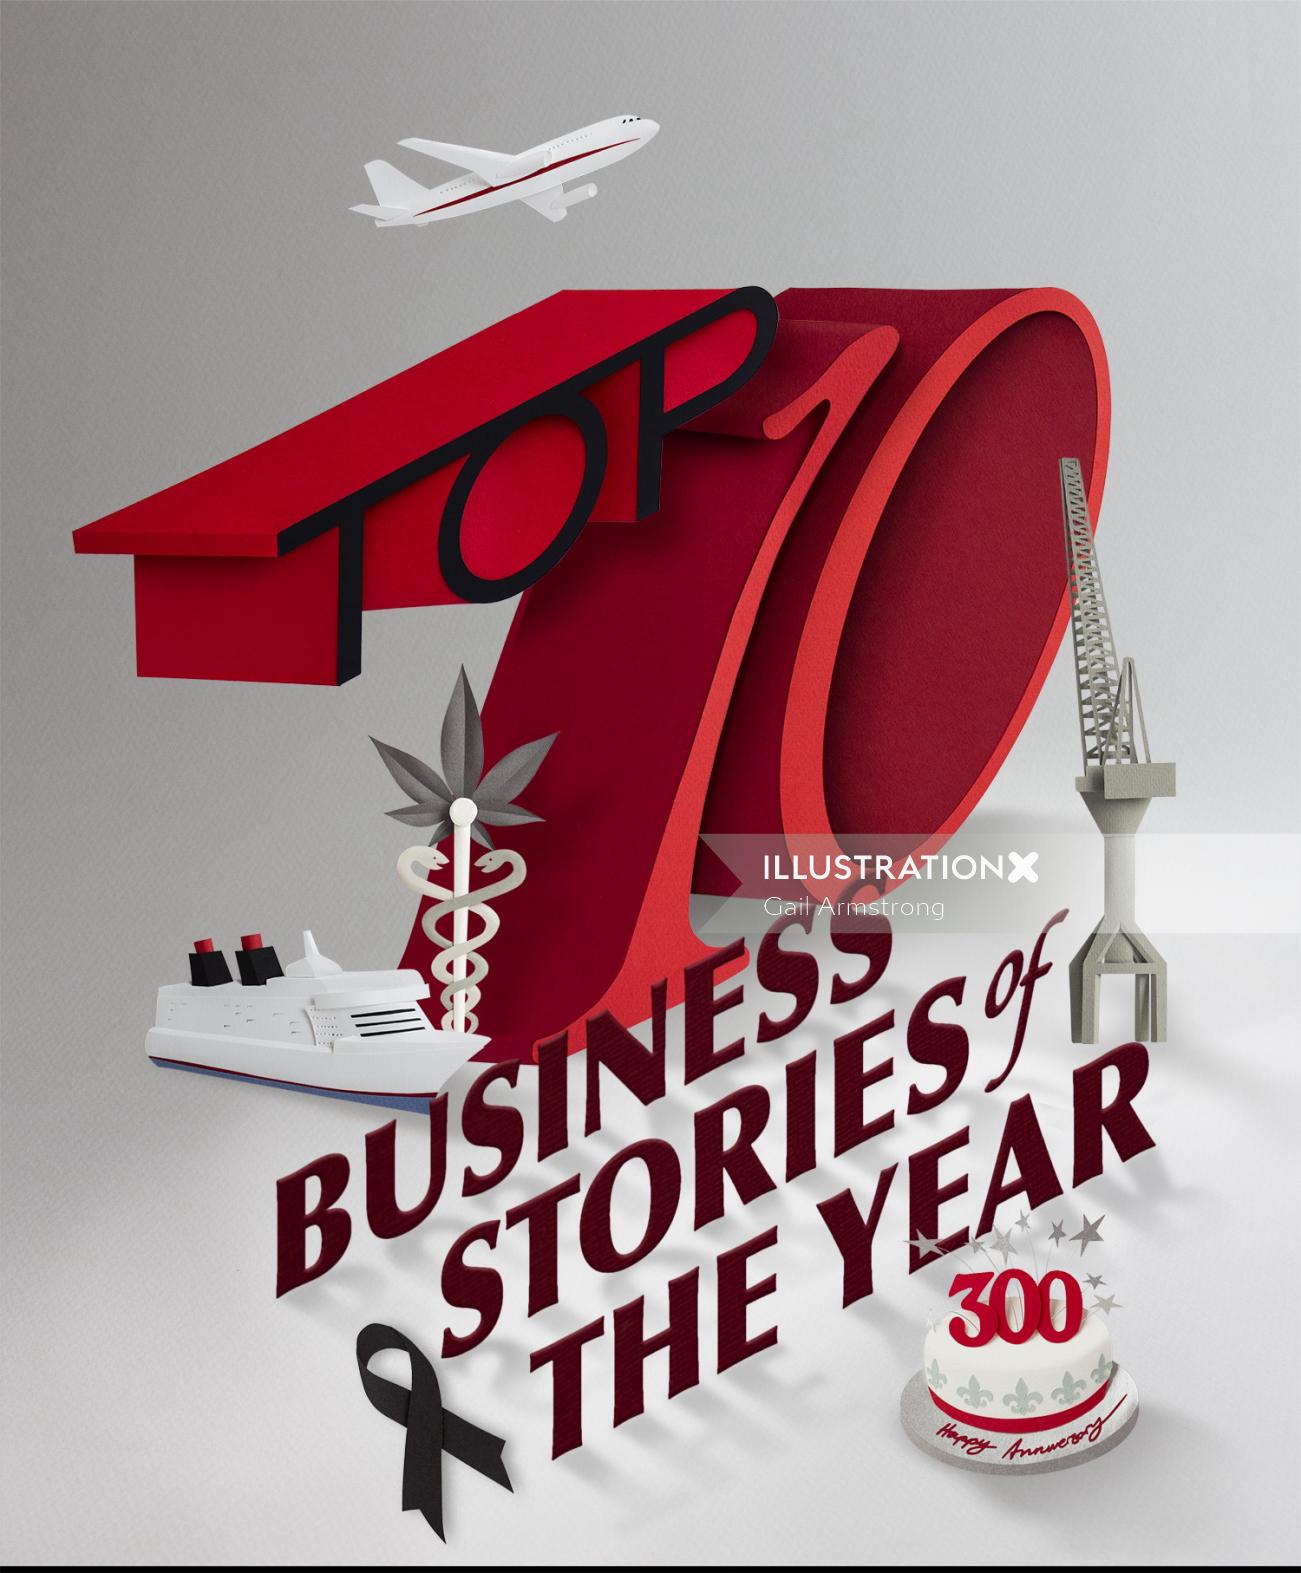 ゲイルアームストロングによる今年のビジネスストーリーのタイポグラフィ